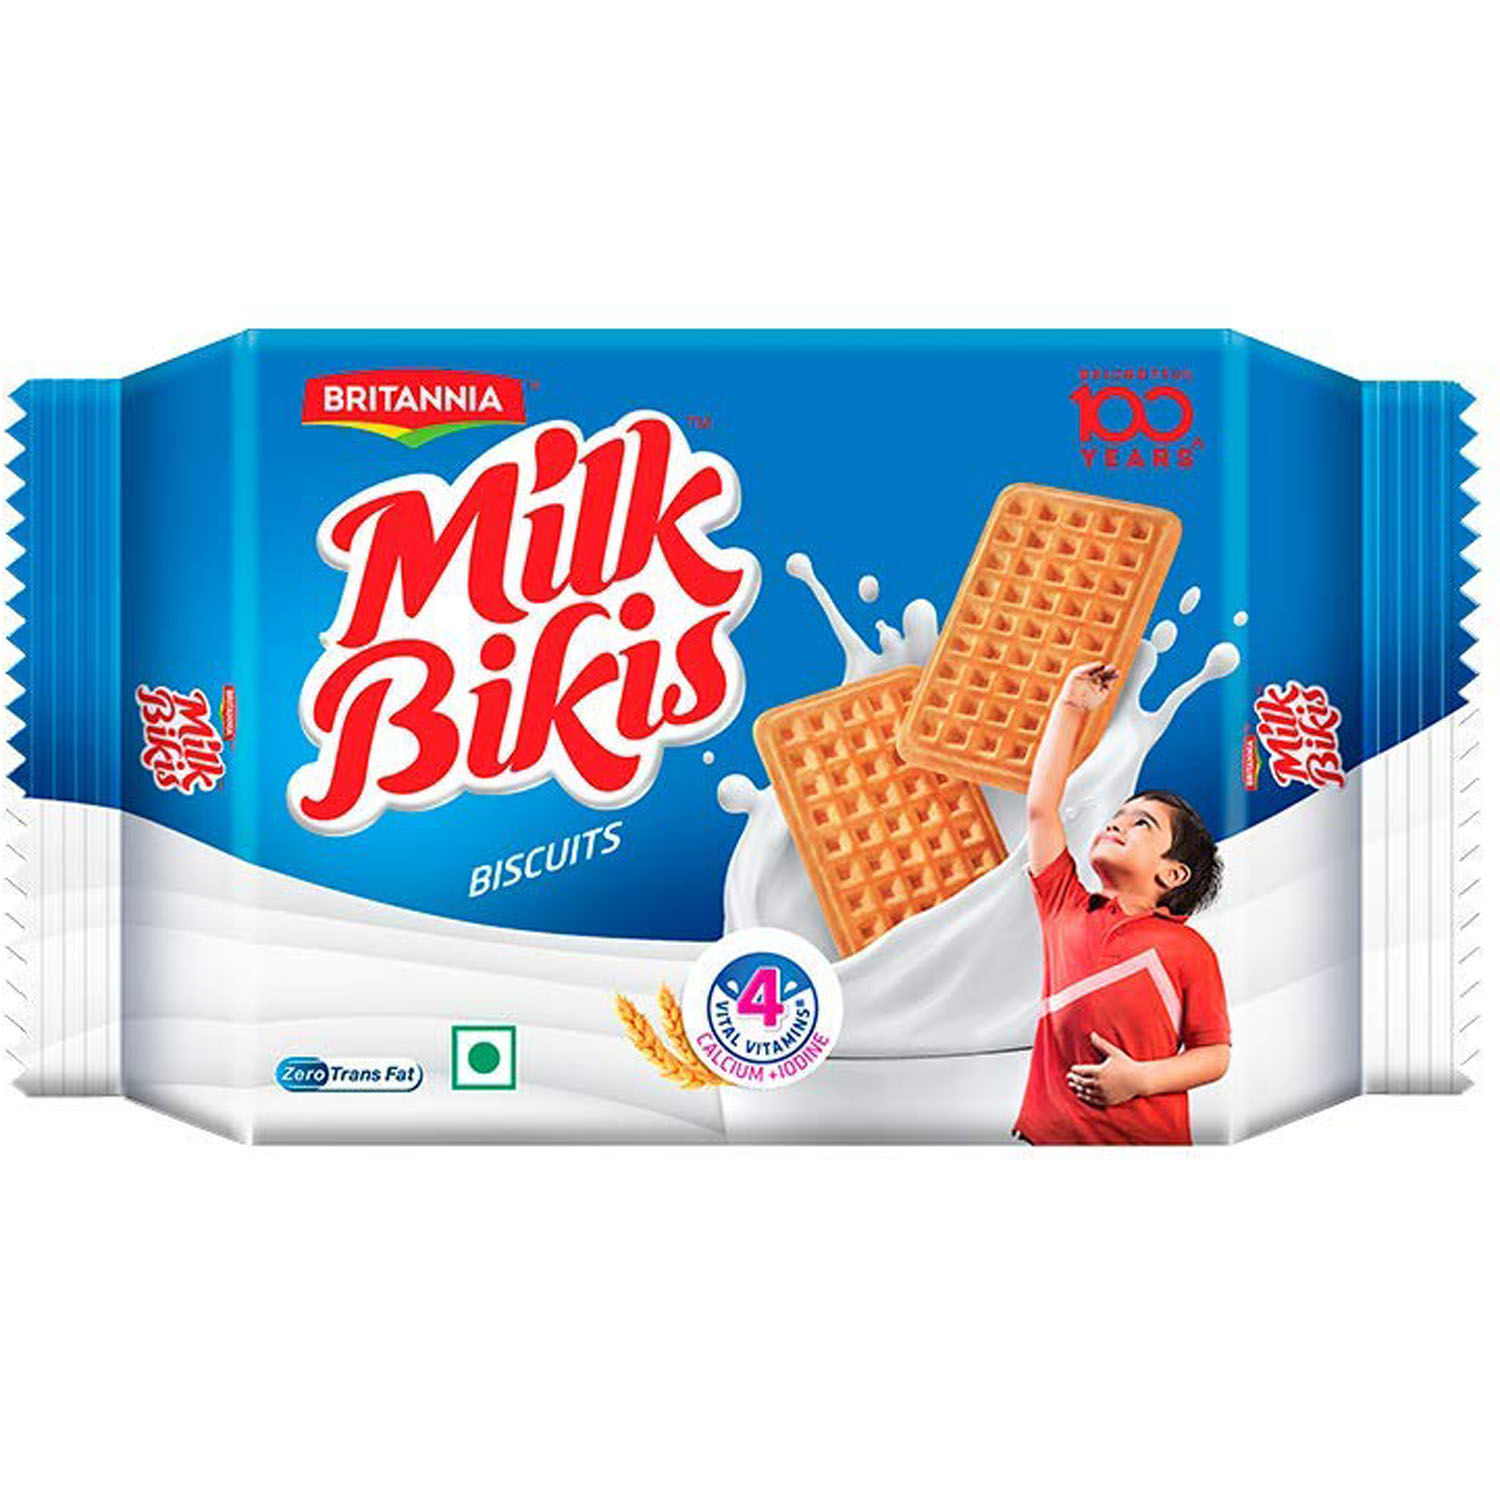 Buy Britannia Milk Bikis Biscuits, 50 gm Online